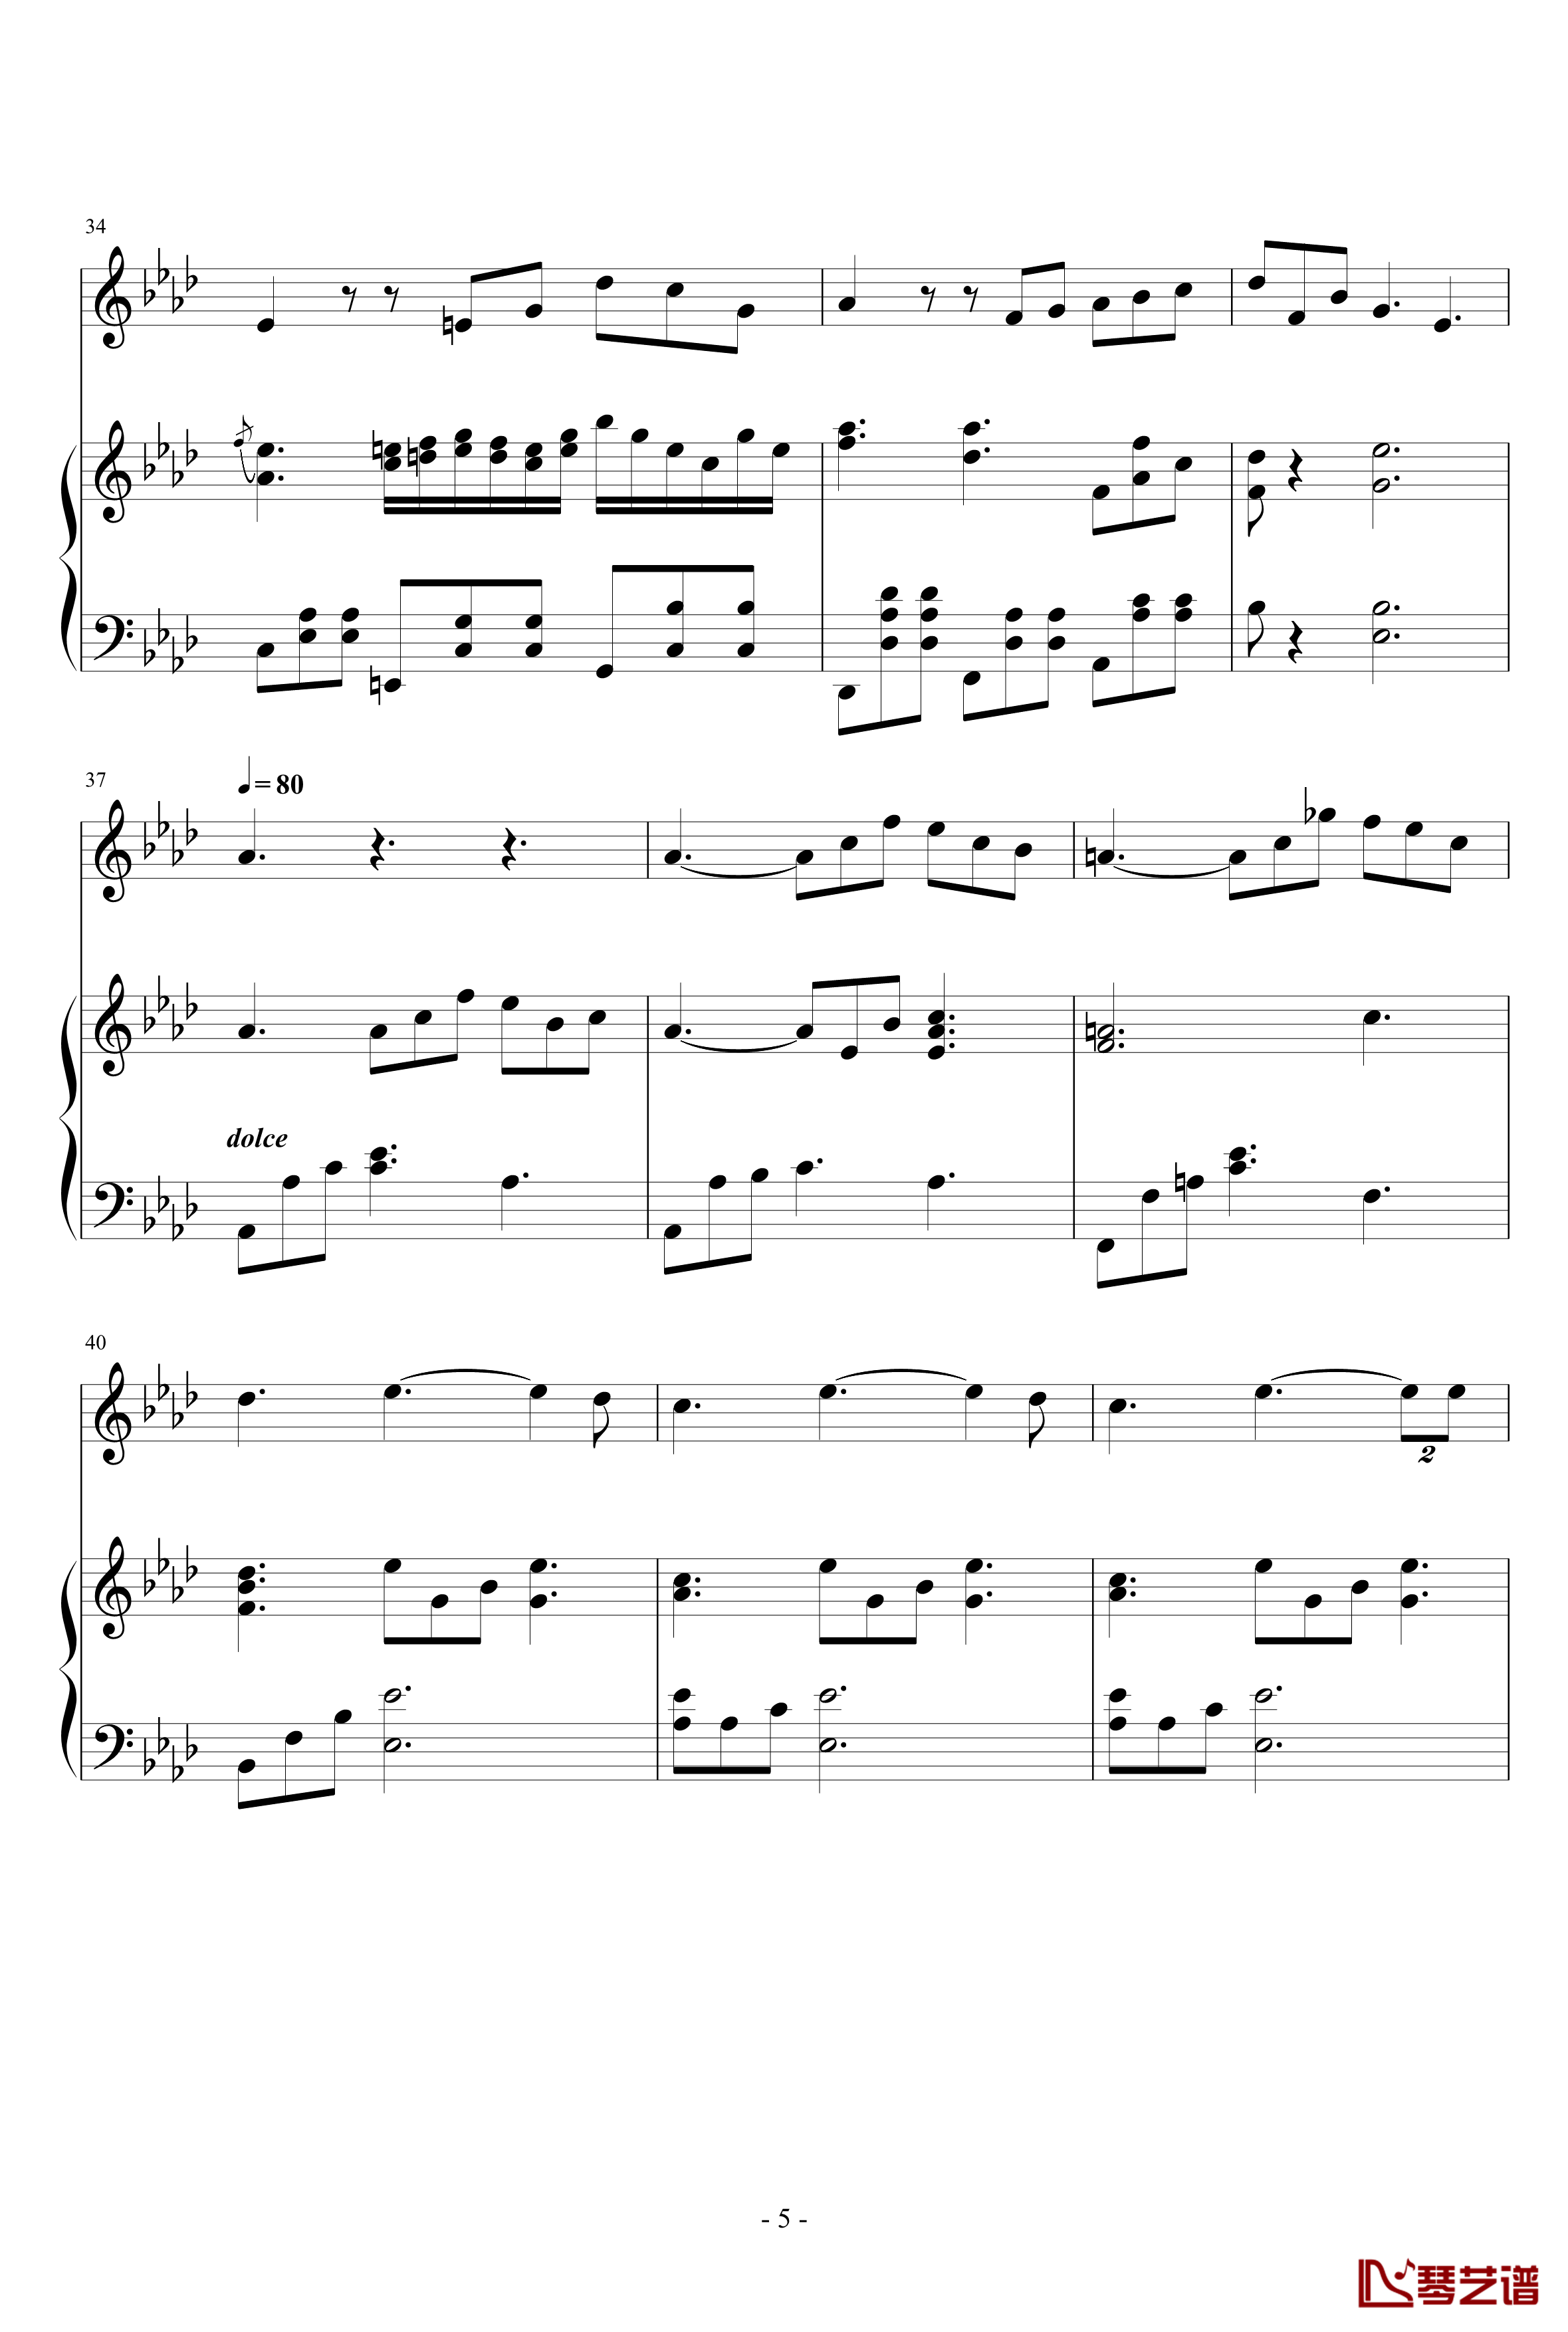 Art Song for winter钢琴谱-nzh19345